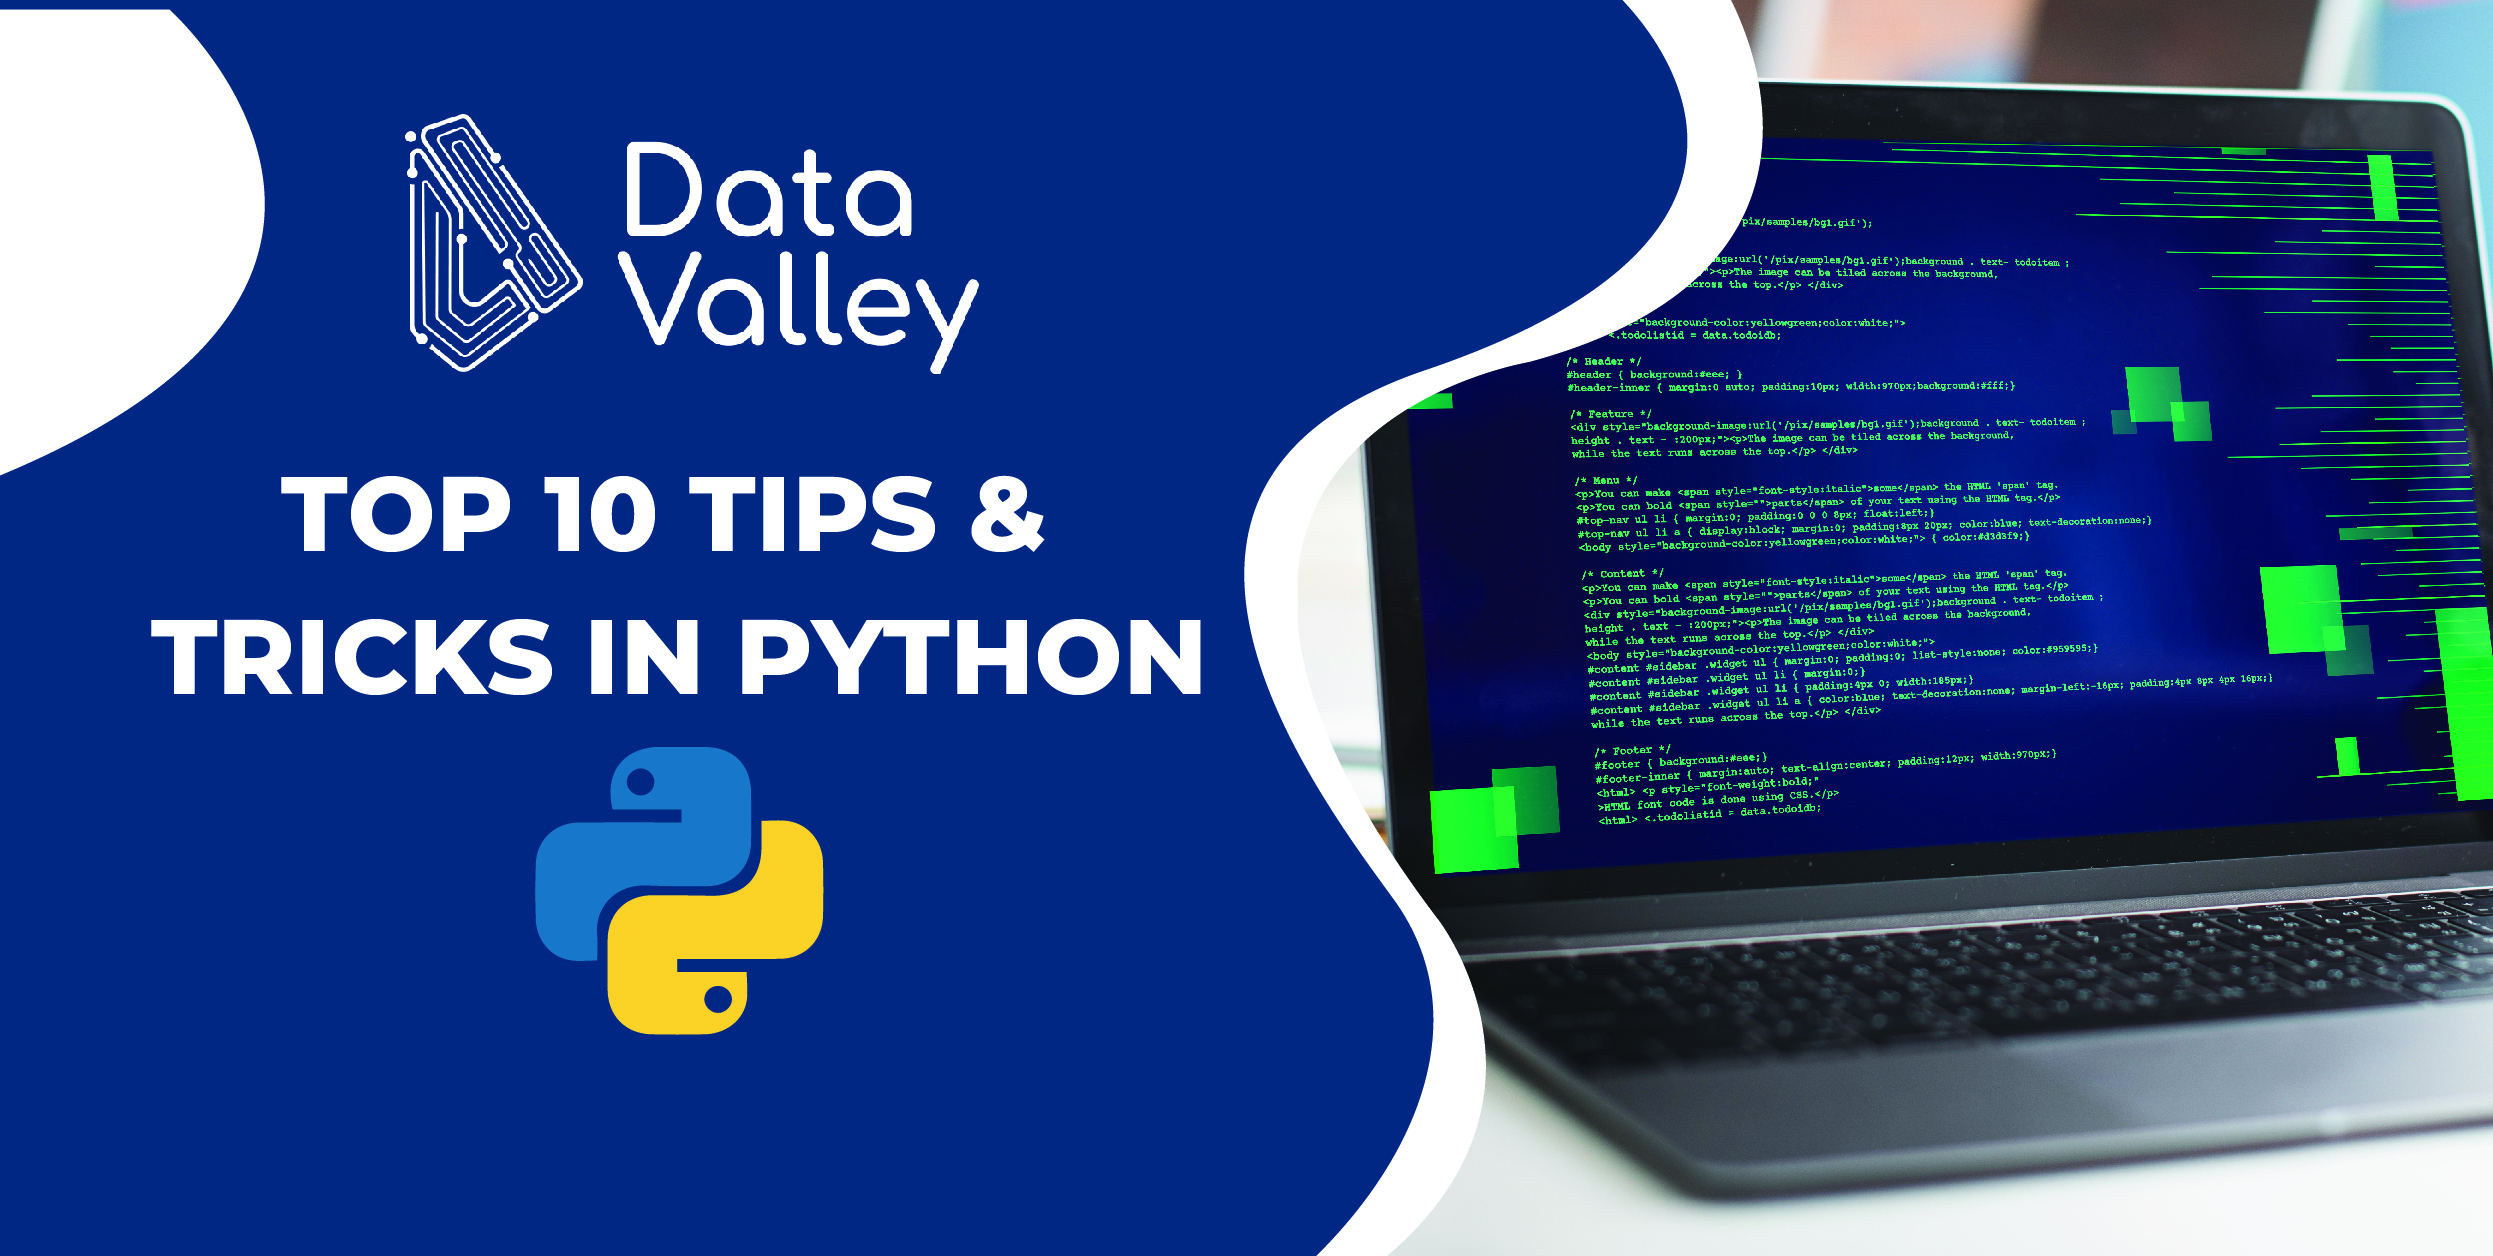 Python là một trong những ngôn ngữ lập trình phổ biến nhất hiện nay và có thể mang lại nhiều lợi ích cho sự nghiệp của bạn. Hãy xem hình ảnh để khám phá thêm về 10 mẹo và thủ thuật hàng đầu trong Python để viết mã tốt hơn, được giới chuyên môn tin dùng và sử dụng trong dự án của họ.